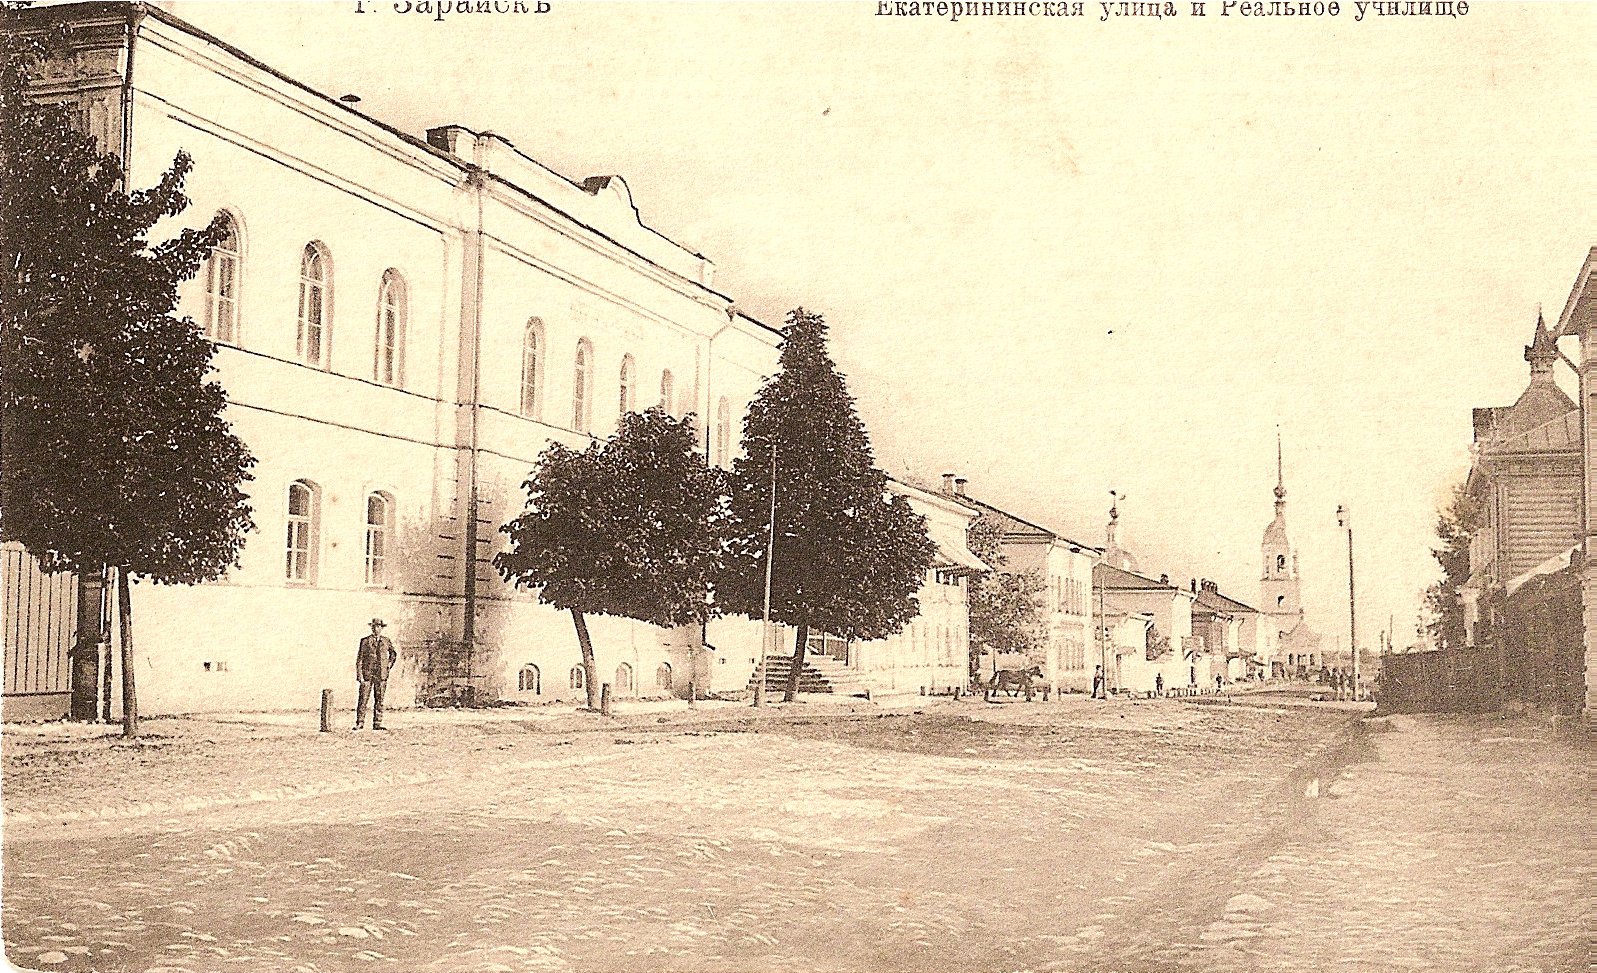 Екатерининская улица и Реальное училище